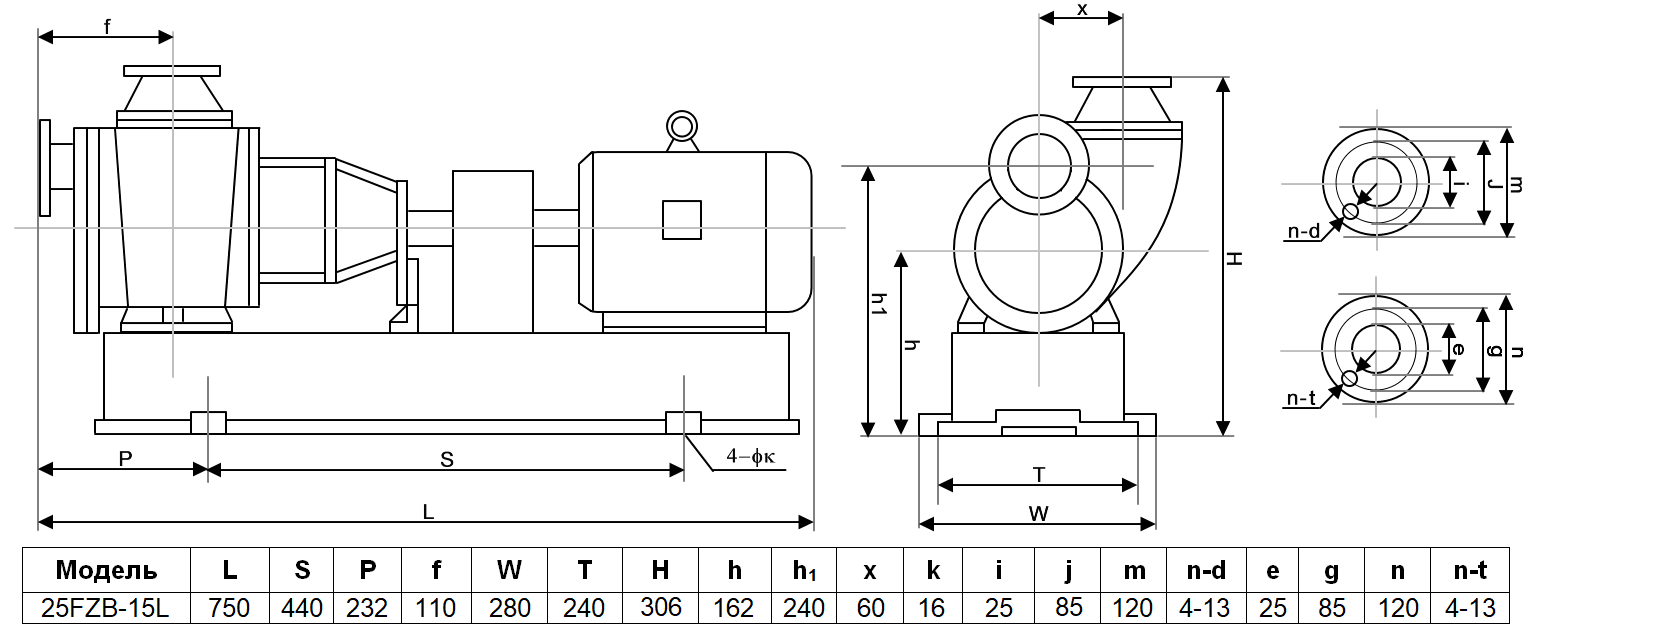 Габаритный чертеж модели ZY Technology 25FZB-15L